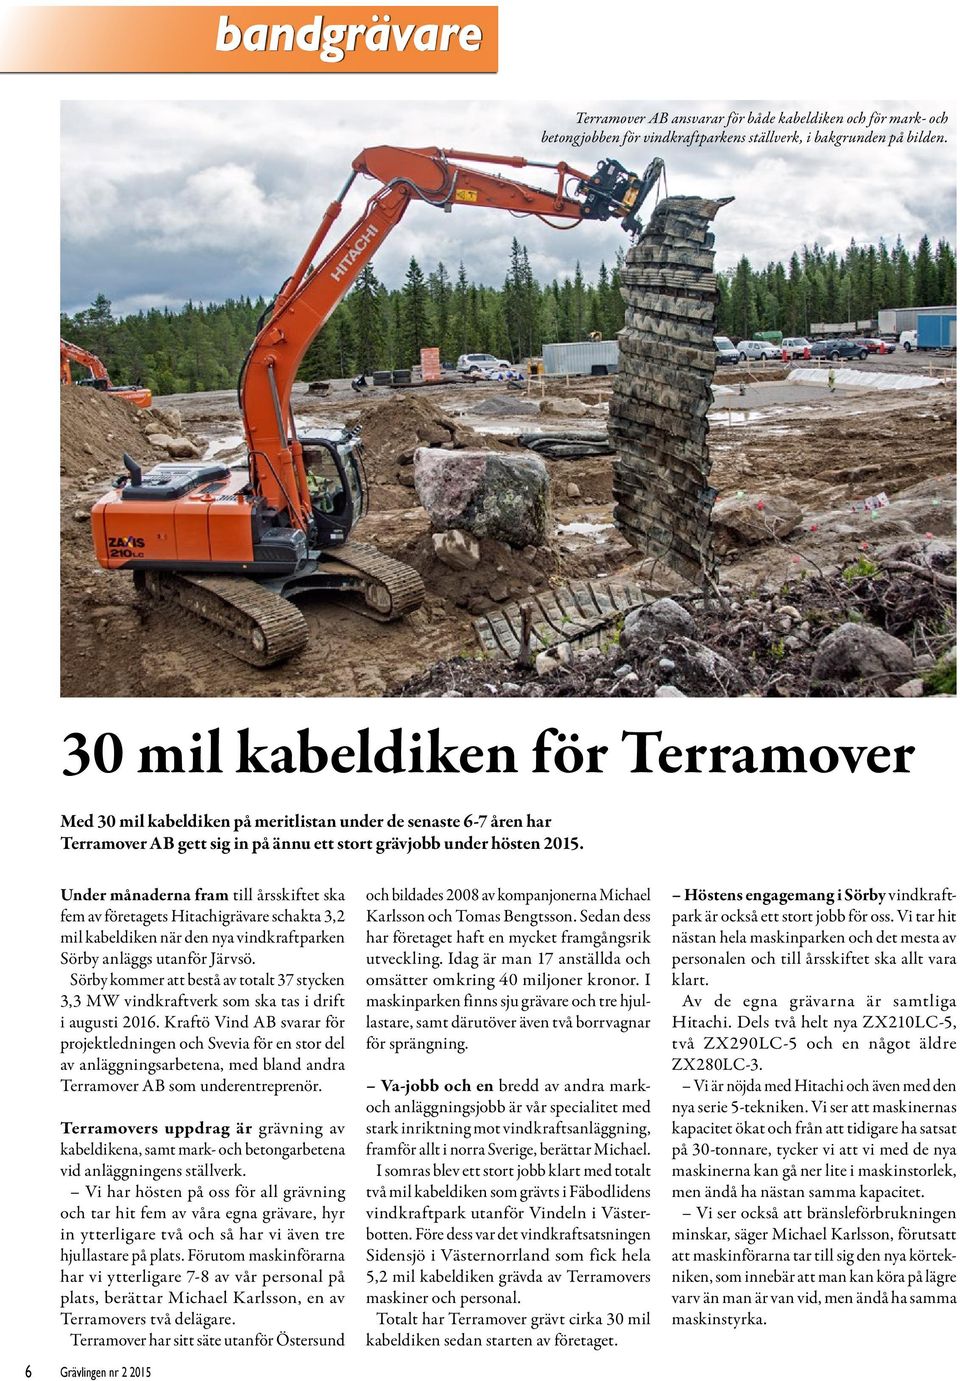 Under månaderna fram till årsskiftet ska fem av företagets Hitachigrävare schakta 3,2 mil kabeldiken när den nya vindkraftparken Sörby anläggs utanför Järvsö.